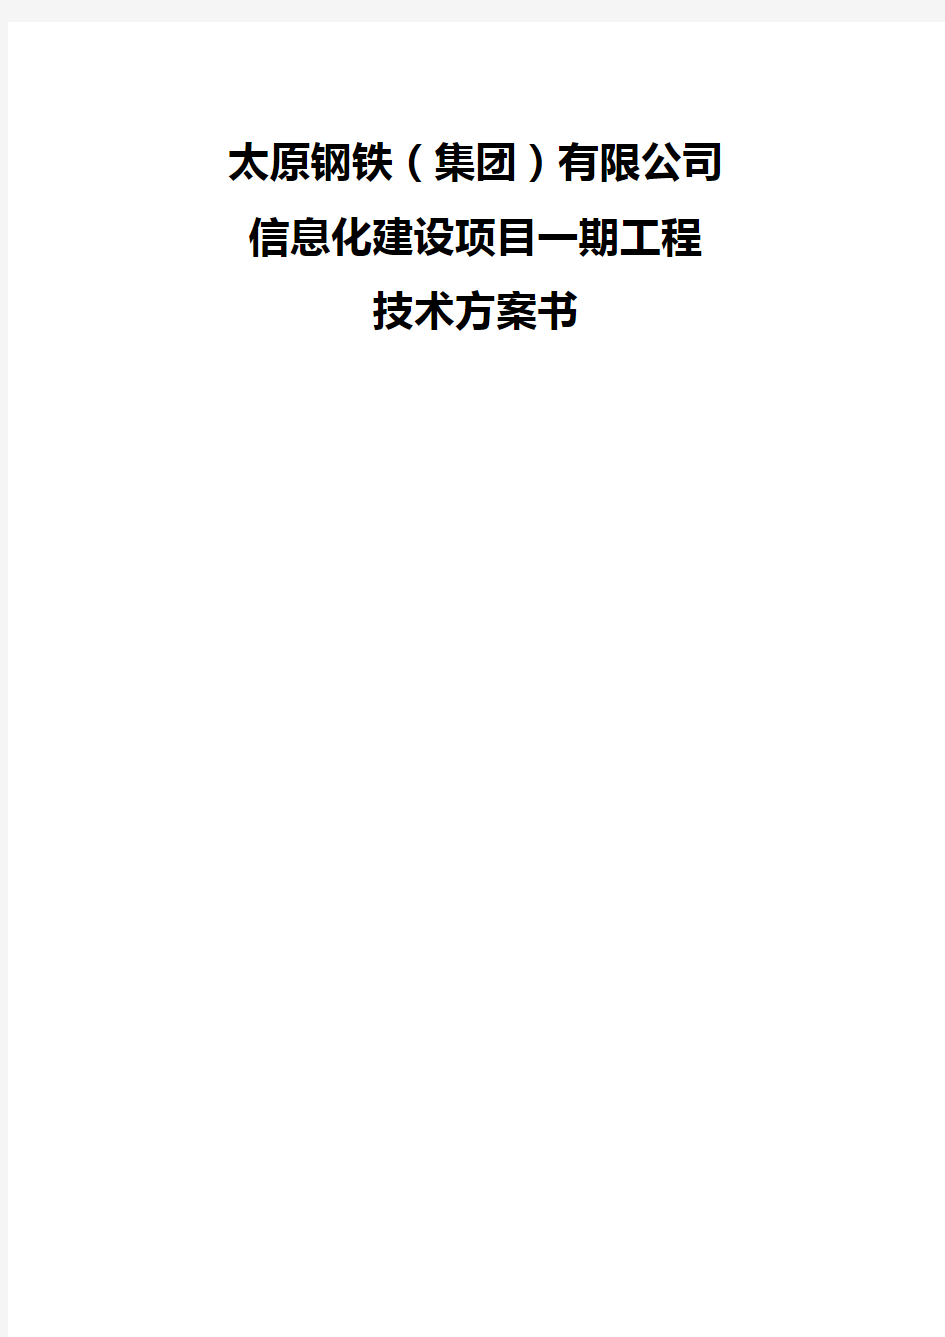 【精品】太原钢铁集团有限公司信息化建设项目一期工程方案技术书